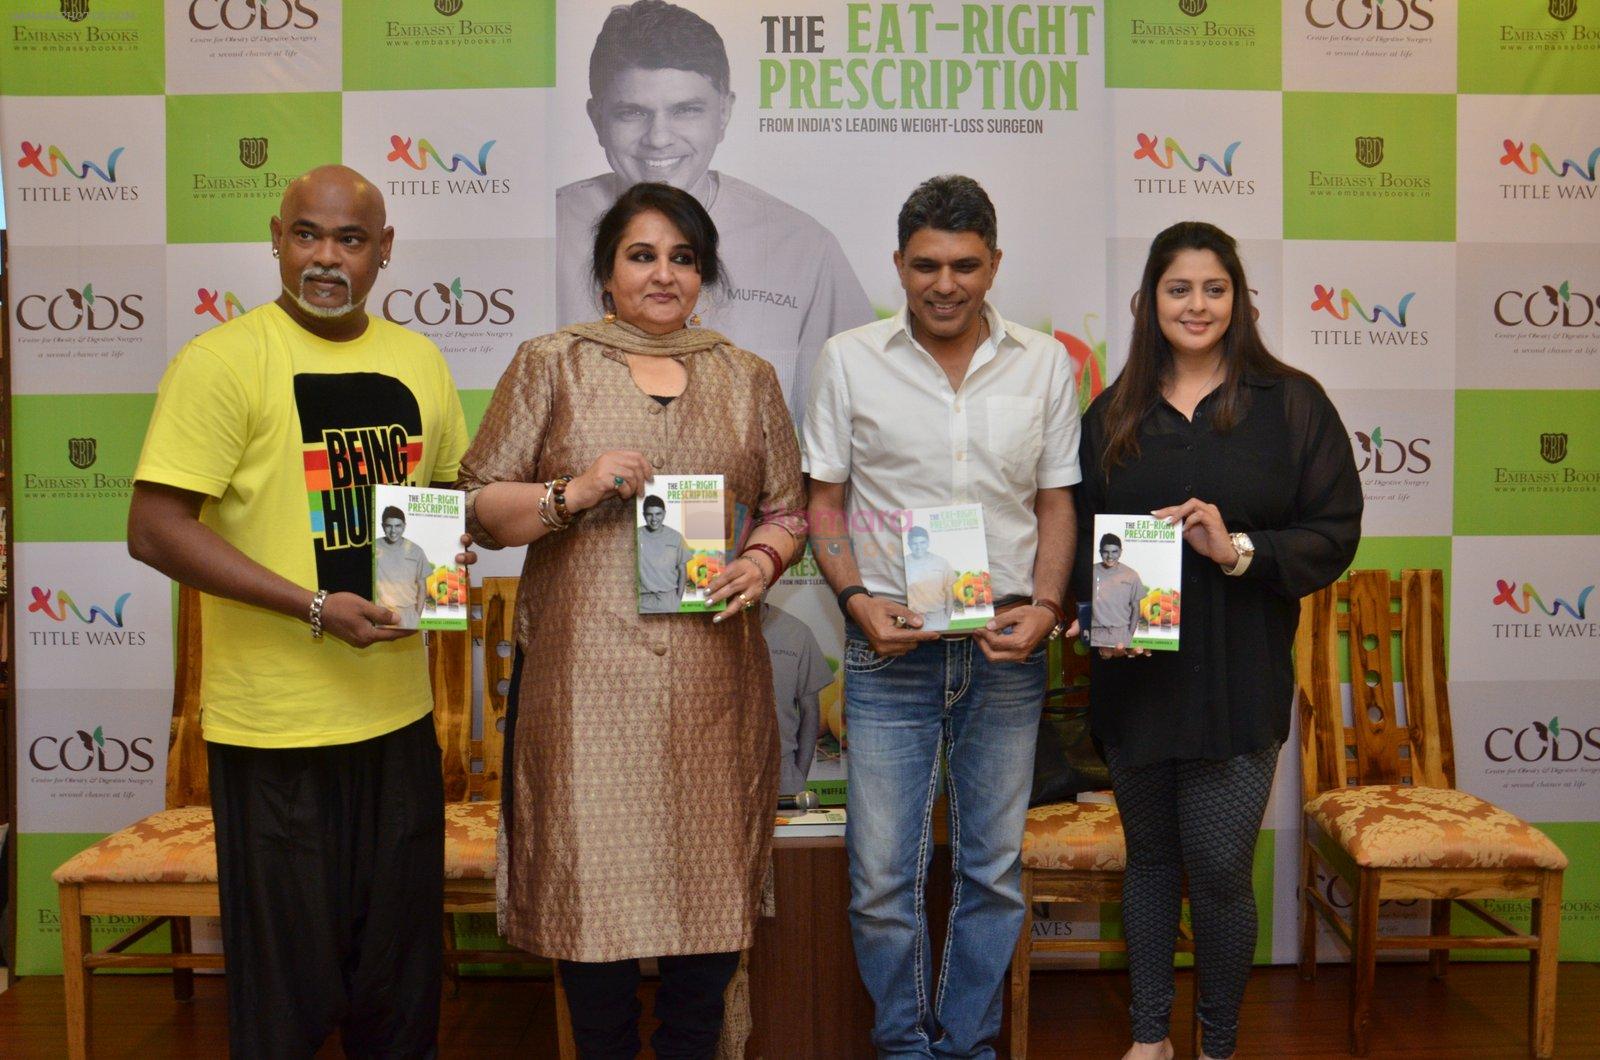 Vinod Kambli, Reena Roy, Nagma at Dr Lakdawala book launch on 24th May 2016